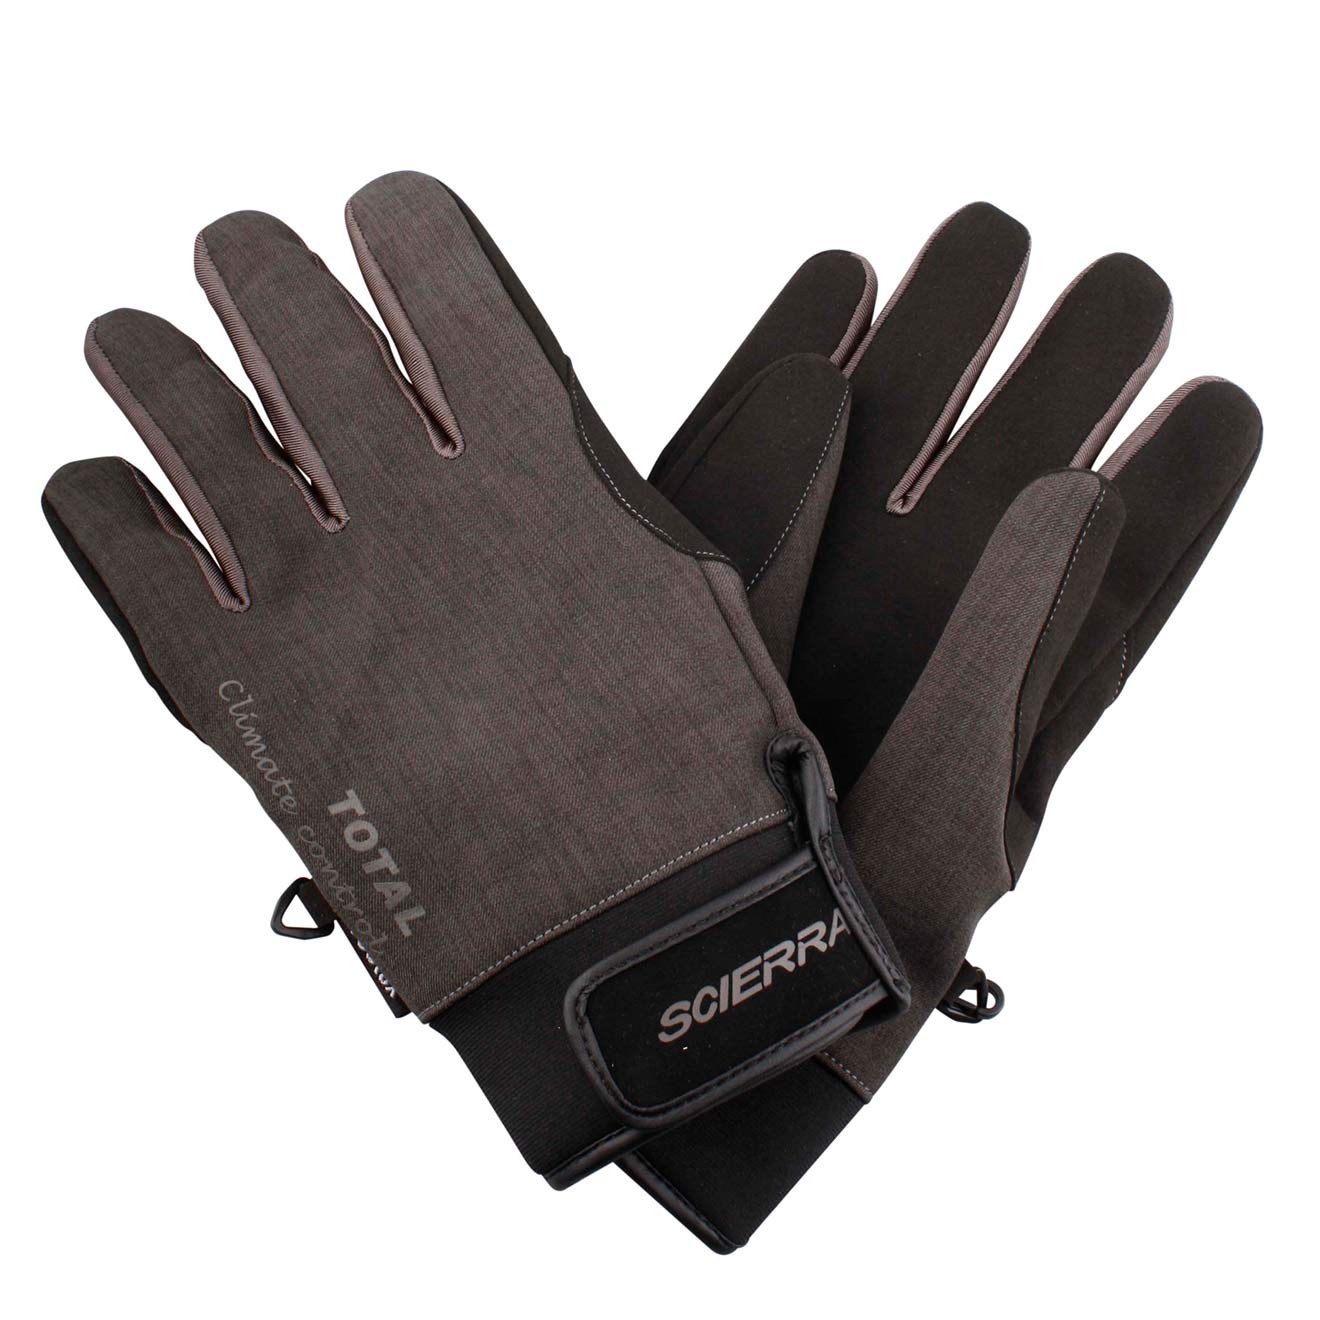 wasserfest sehr bequem Handschuhe Scierra Sensidry Glove 